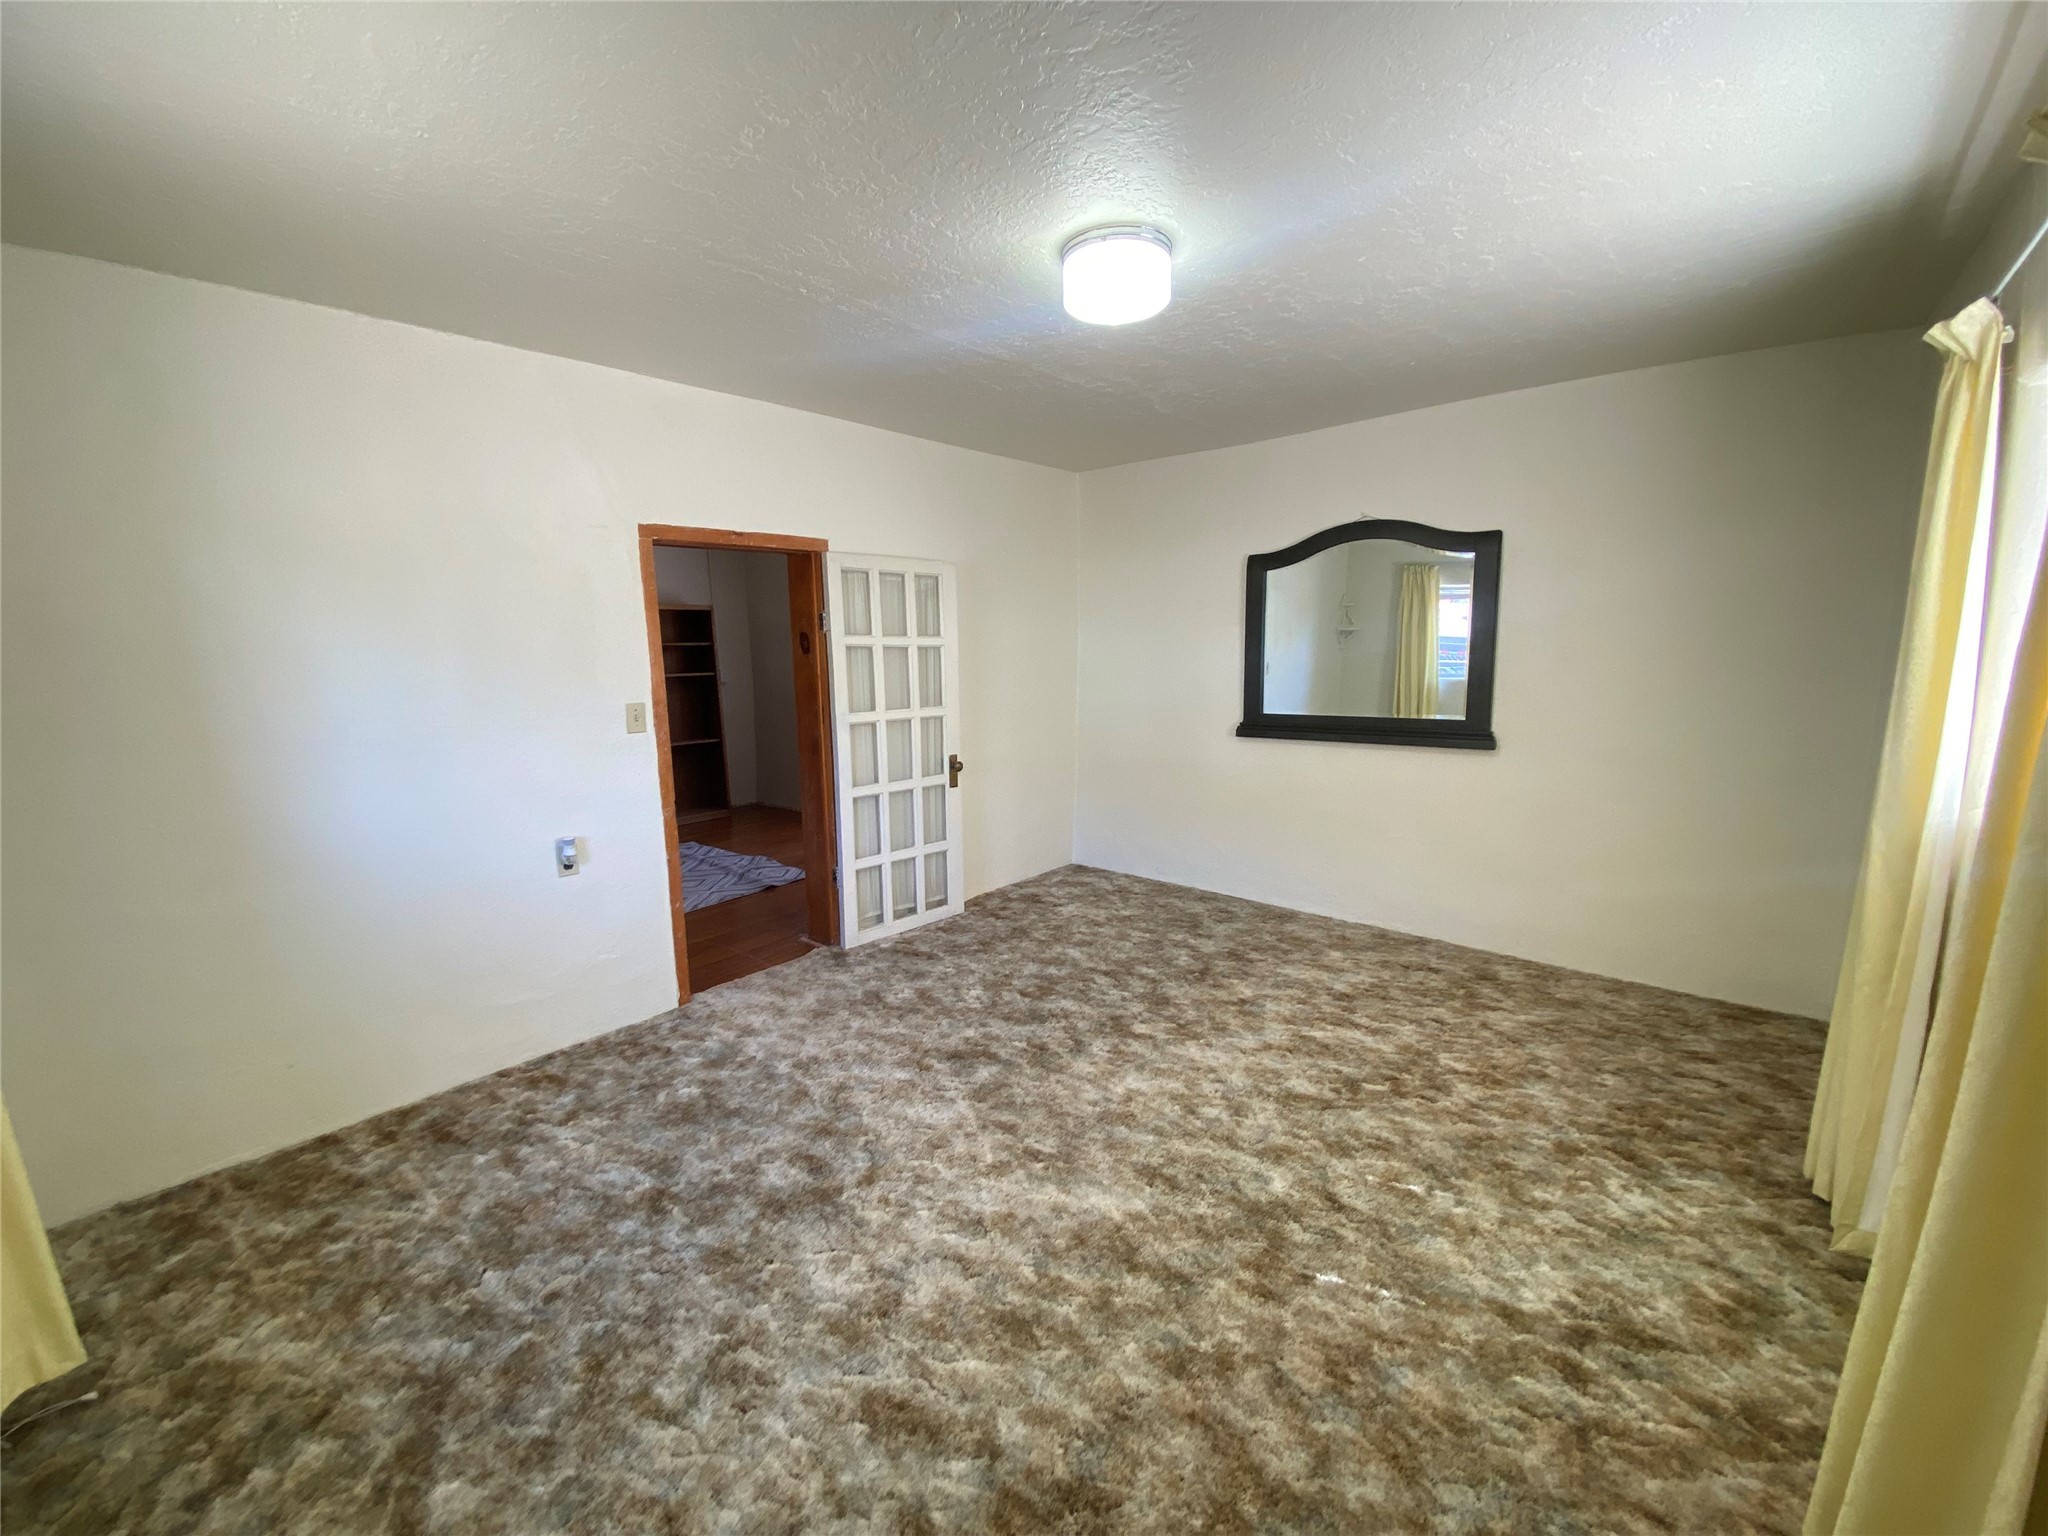 4706 El Llano, Las Vegas, New Mexico 87701, 2 Bedrooms Bedrooms, ,1 BathroomBathrooms,Residential,For Sale,4706 El Llano,202401568